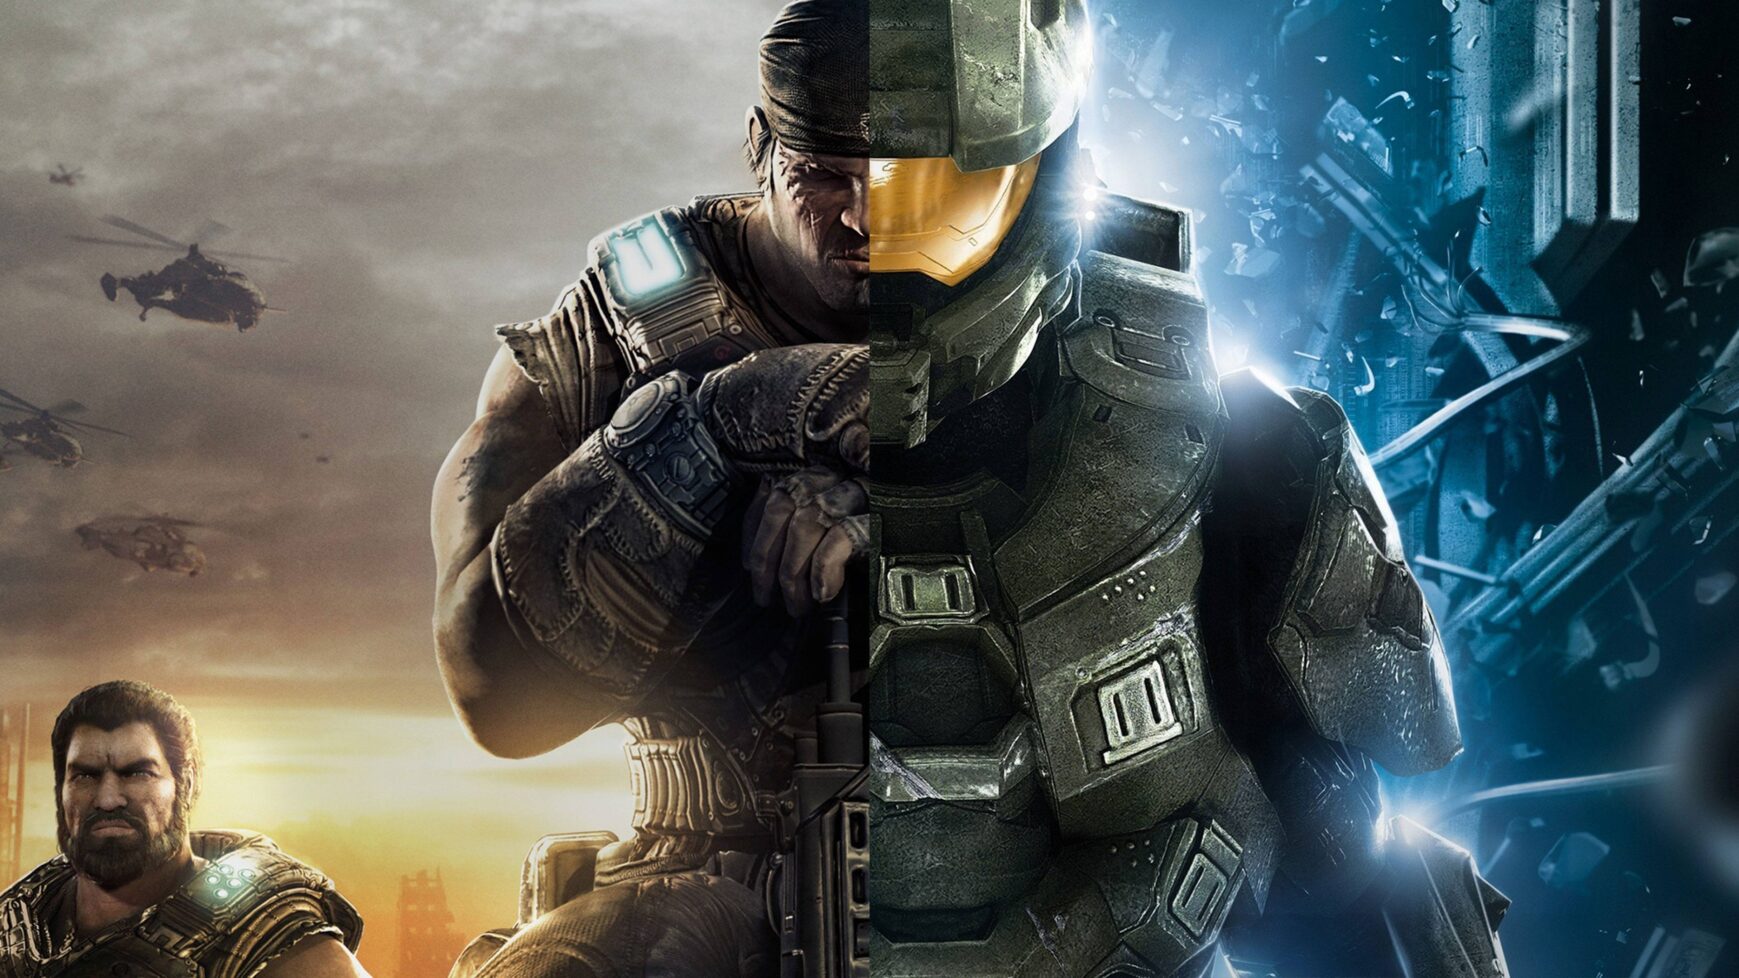 Halo gears of war split image